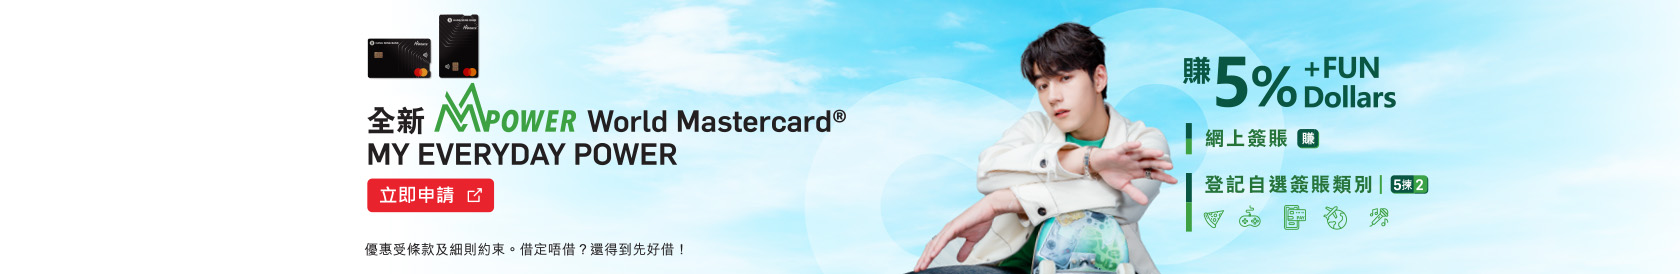 全新MMPOWER World Mastercard® 限時激賞迎新享高達$1,200 +FUN Dollars (於新視窗開啟)